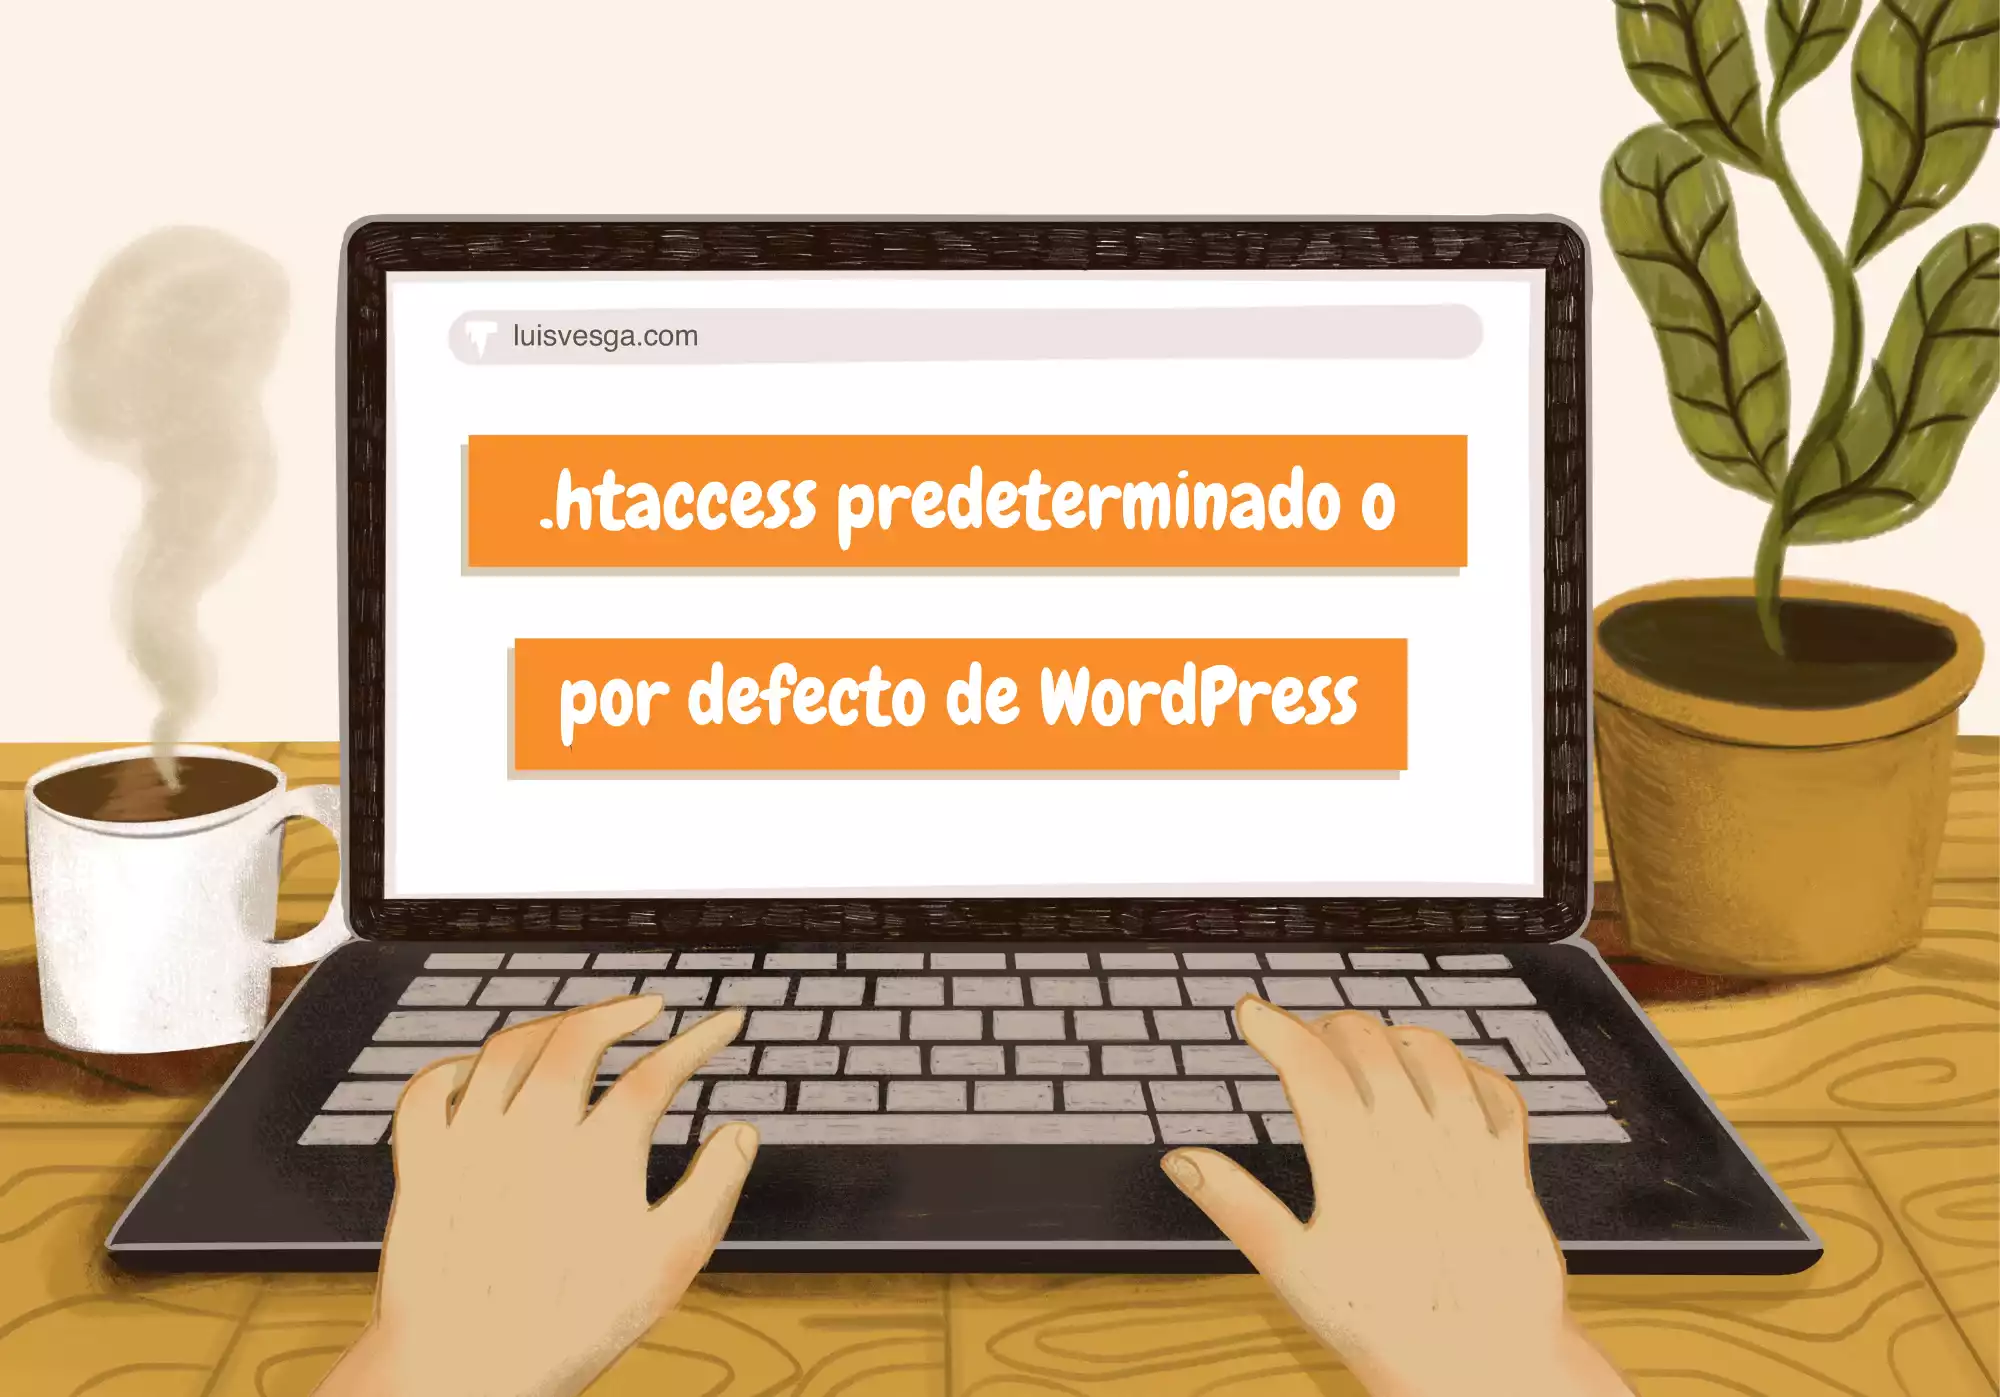 .htaccess predeterminado o por defecto de WordPress